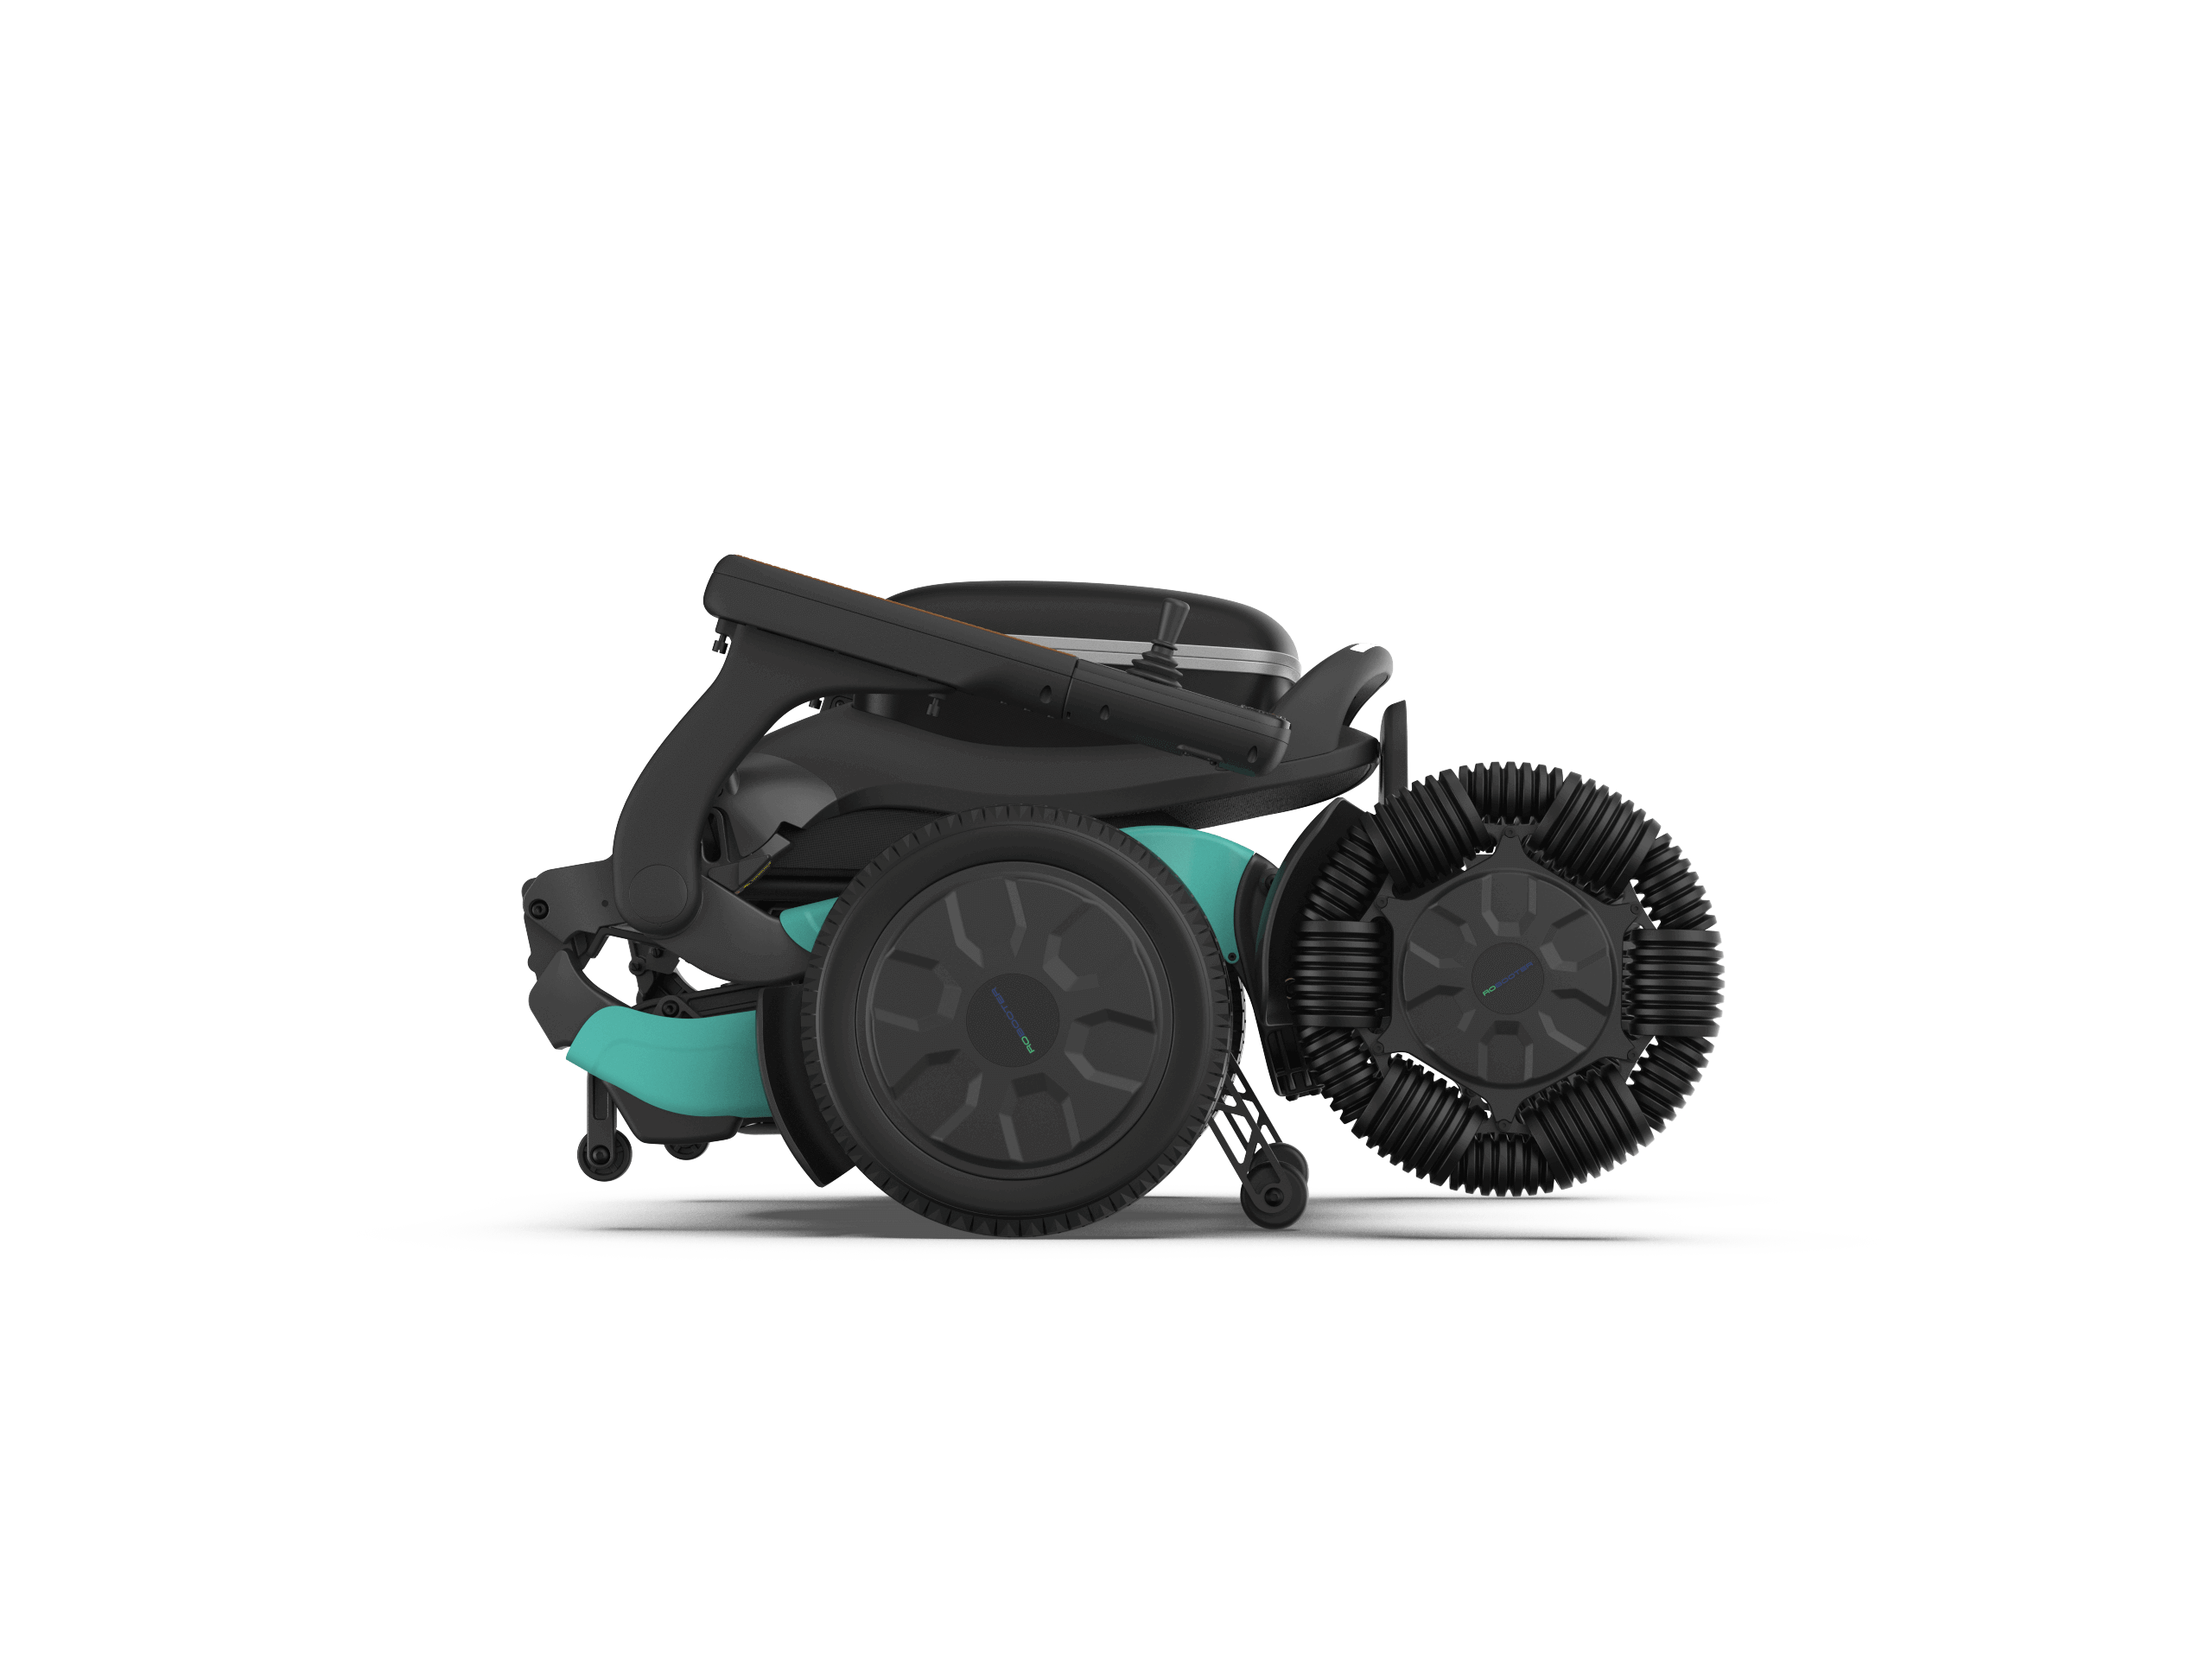 Robooter E60 Pro All Terrain Electric Wheelchair